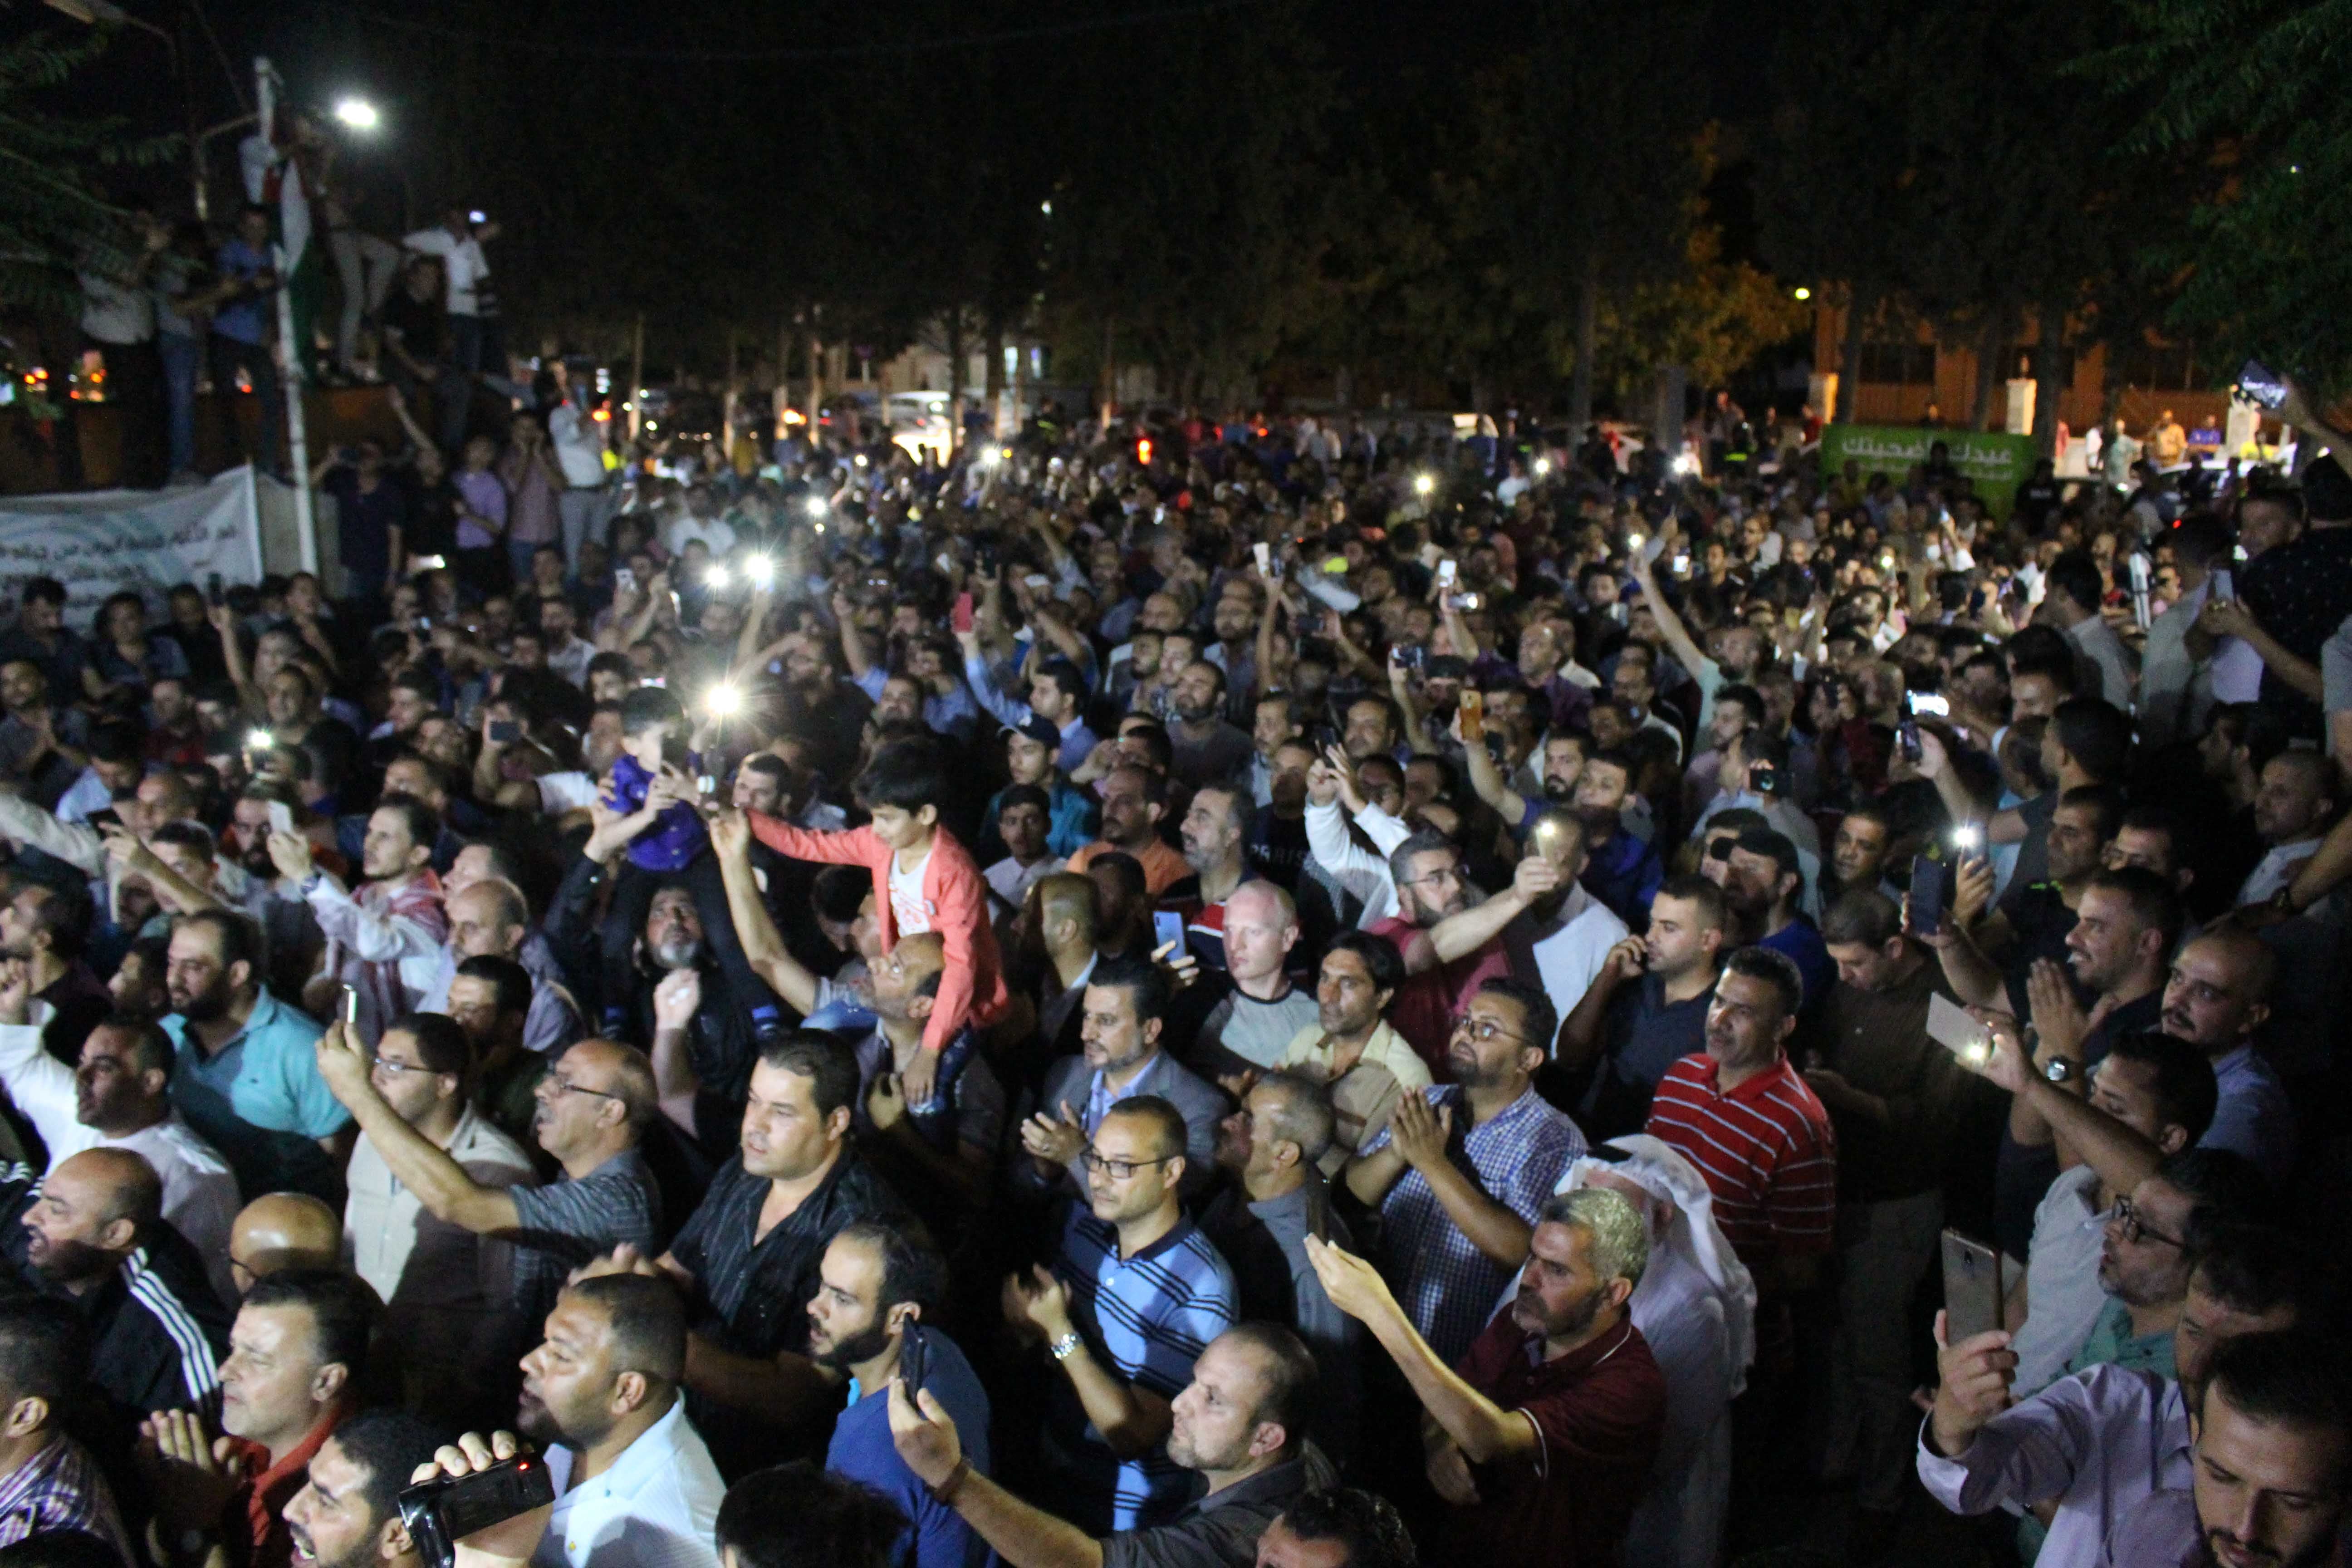 Dans la nuit du 1er août 2020, une foule d'enseignants jordaniens manifestait pacifiquement à Irbid, dans le nord-ouest de la Jordanie, pour demander l'annulation de la décision de fermer le Syndicat des enseignants. Le photojournaliste qui a pris cette photo, Laith Al-Junaidi, a été arrêté le 9 août 2020, alors qu’il continuait à couvrir les manifestations.